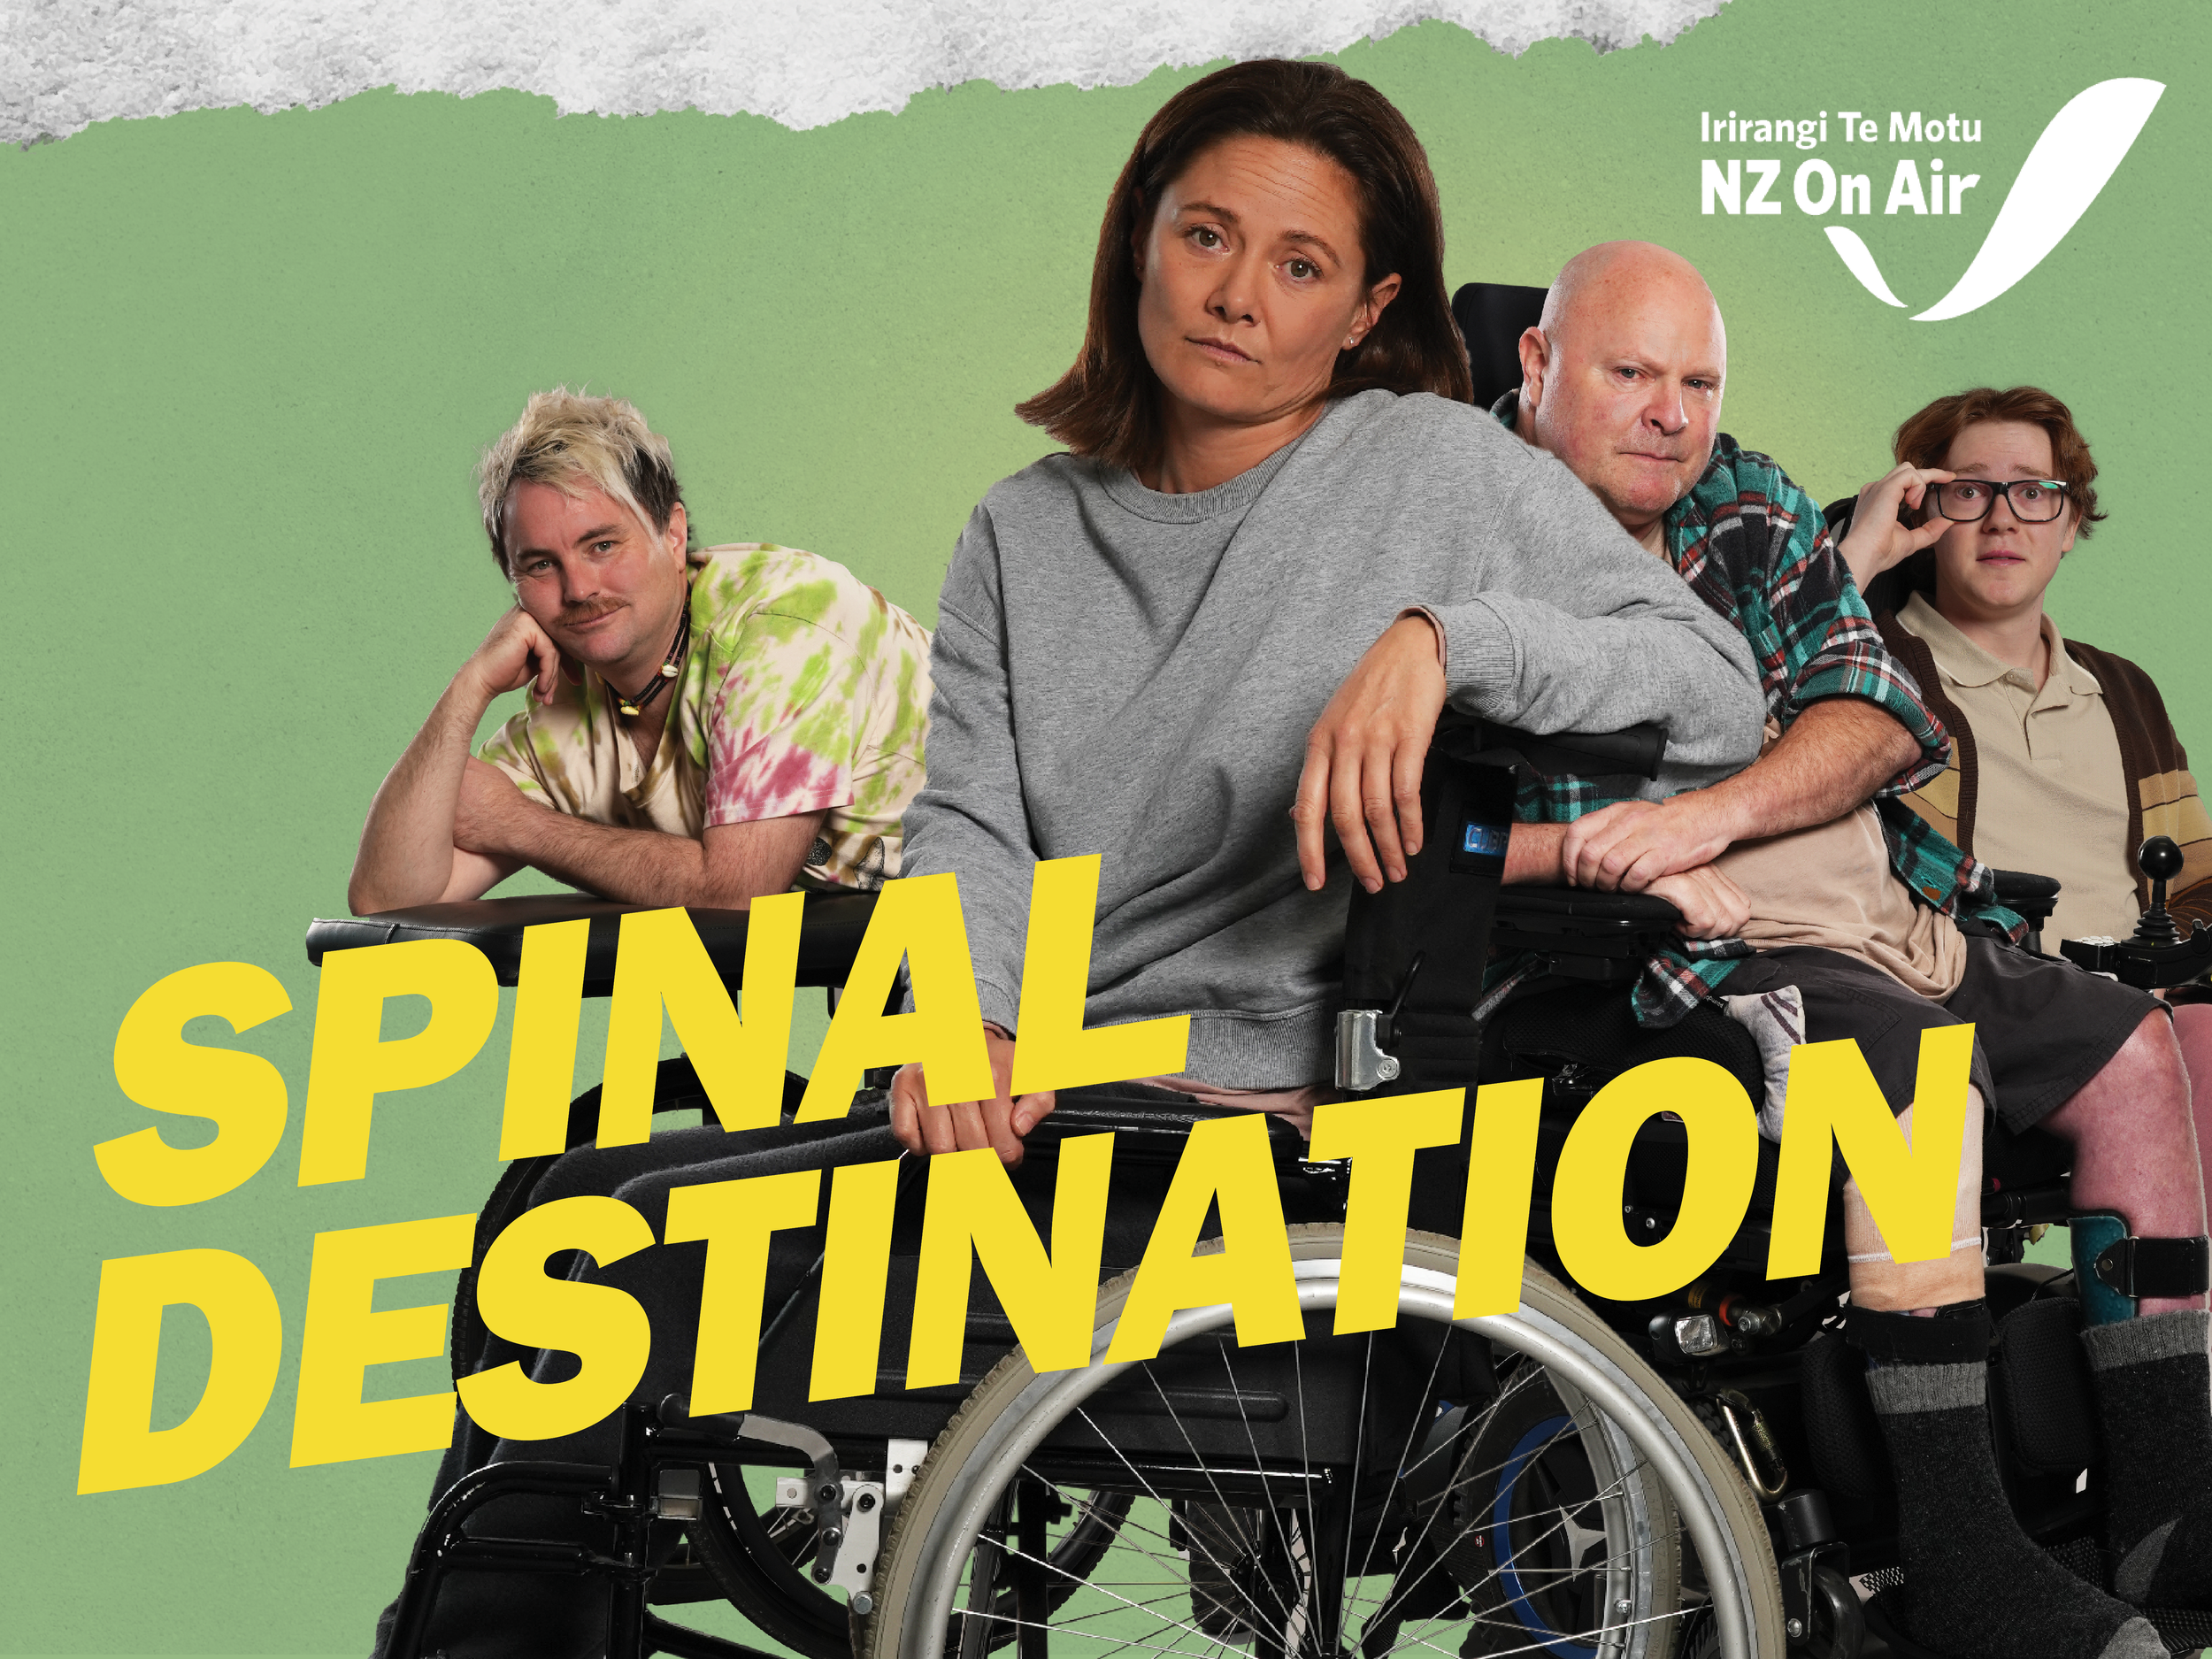 Spinal Destination - Unit Publicity & Launch PR Campaign